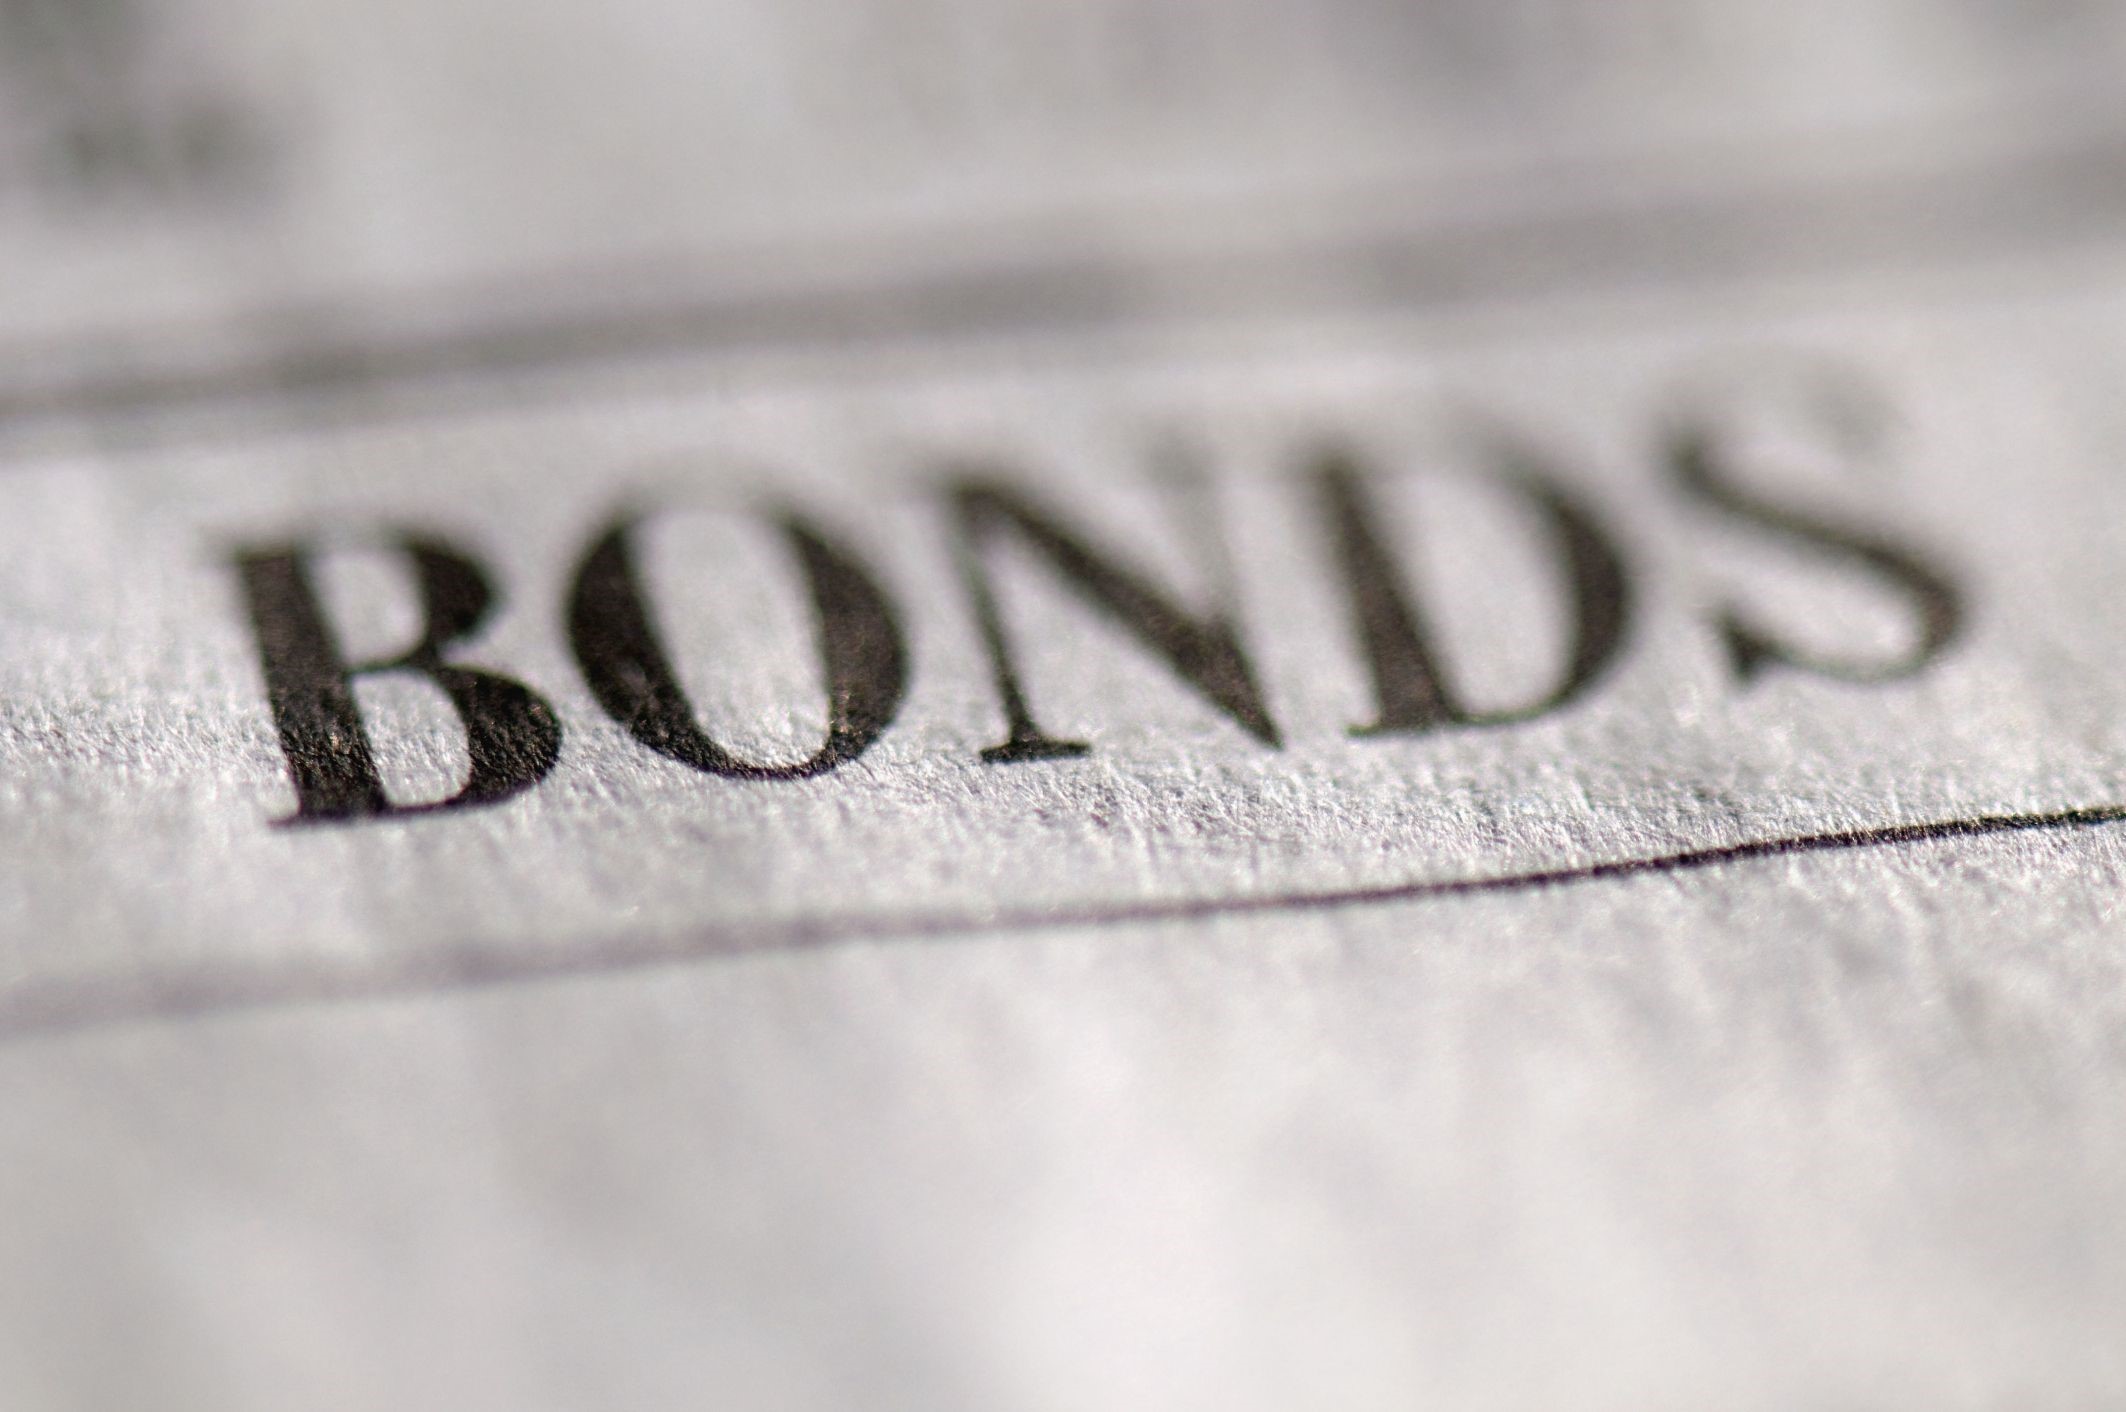 Vanguard Short-Term Bond Index Fund ETF-shares (BSV ETF) spårar ett marknadsvägt index för amerikanska statsobligationer, företags- och investment grade-internationella obligationer i investment grade med en löptid på 1-5 år.